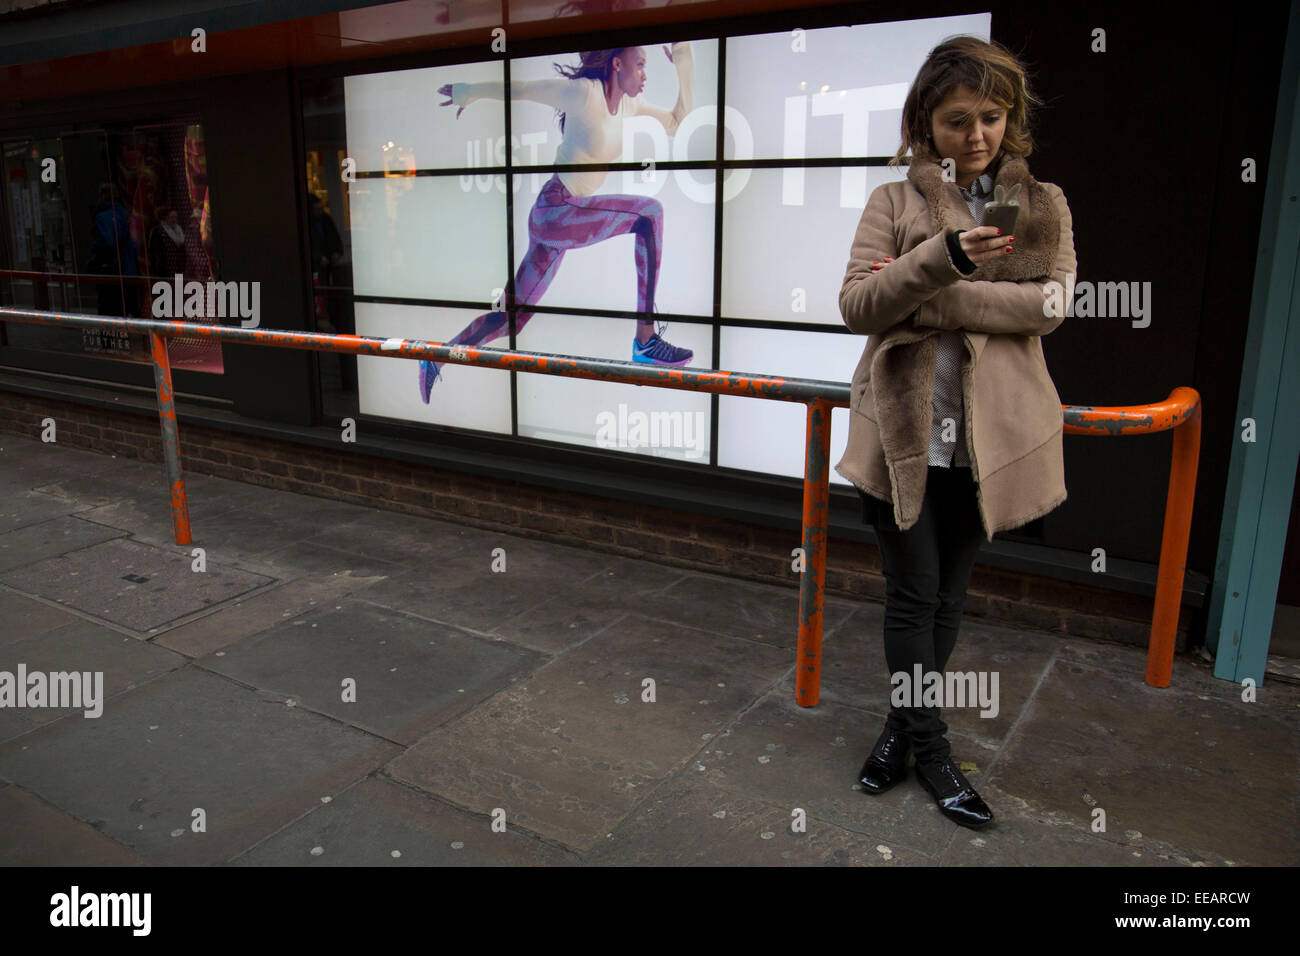 Nike Werbung Läufer läuft entlang ein Hindernis in der Nähe von  ahnungslosen Menschen. Die video Anzeige mit dem Slogan "Just Do It" mit  einer Frau, die quer über des Bildschirms sorgt für